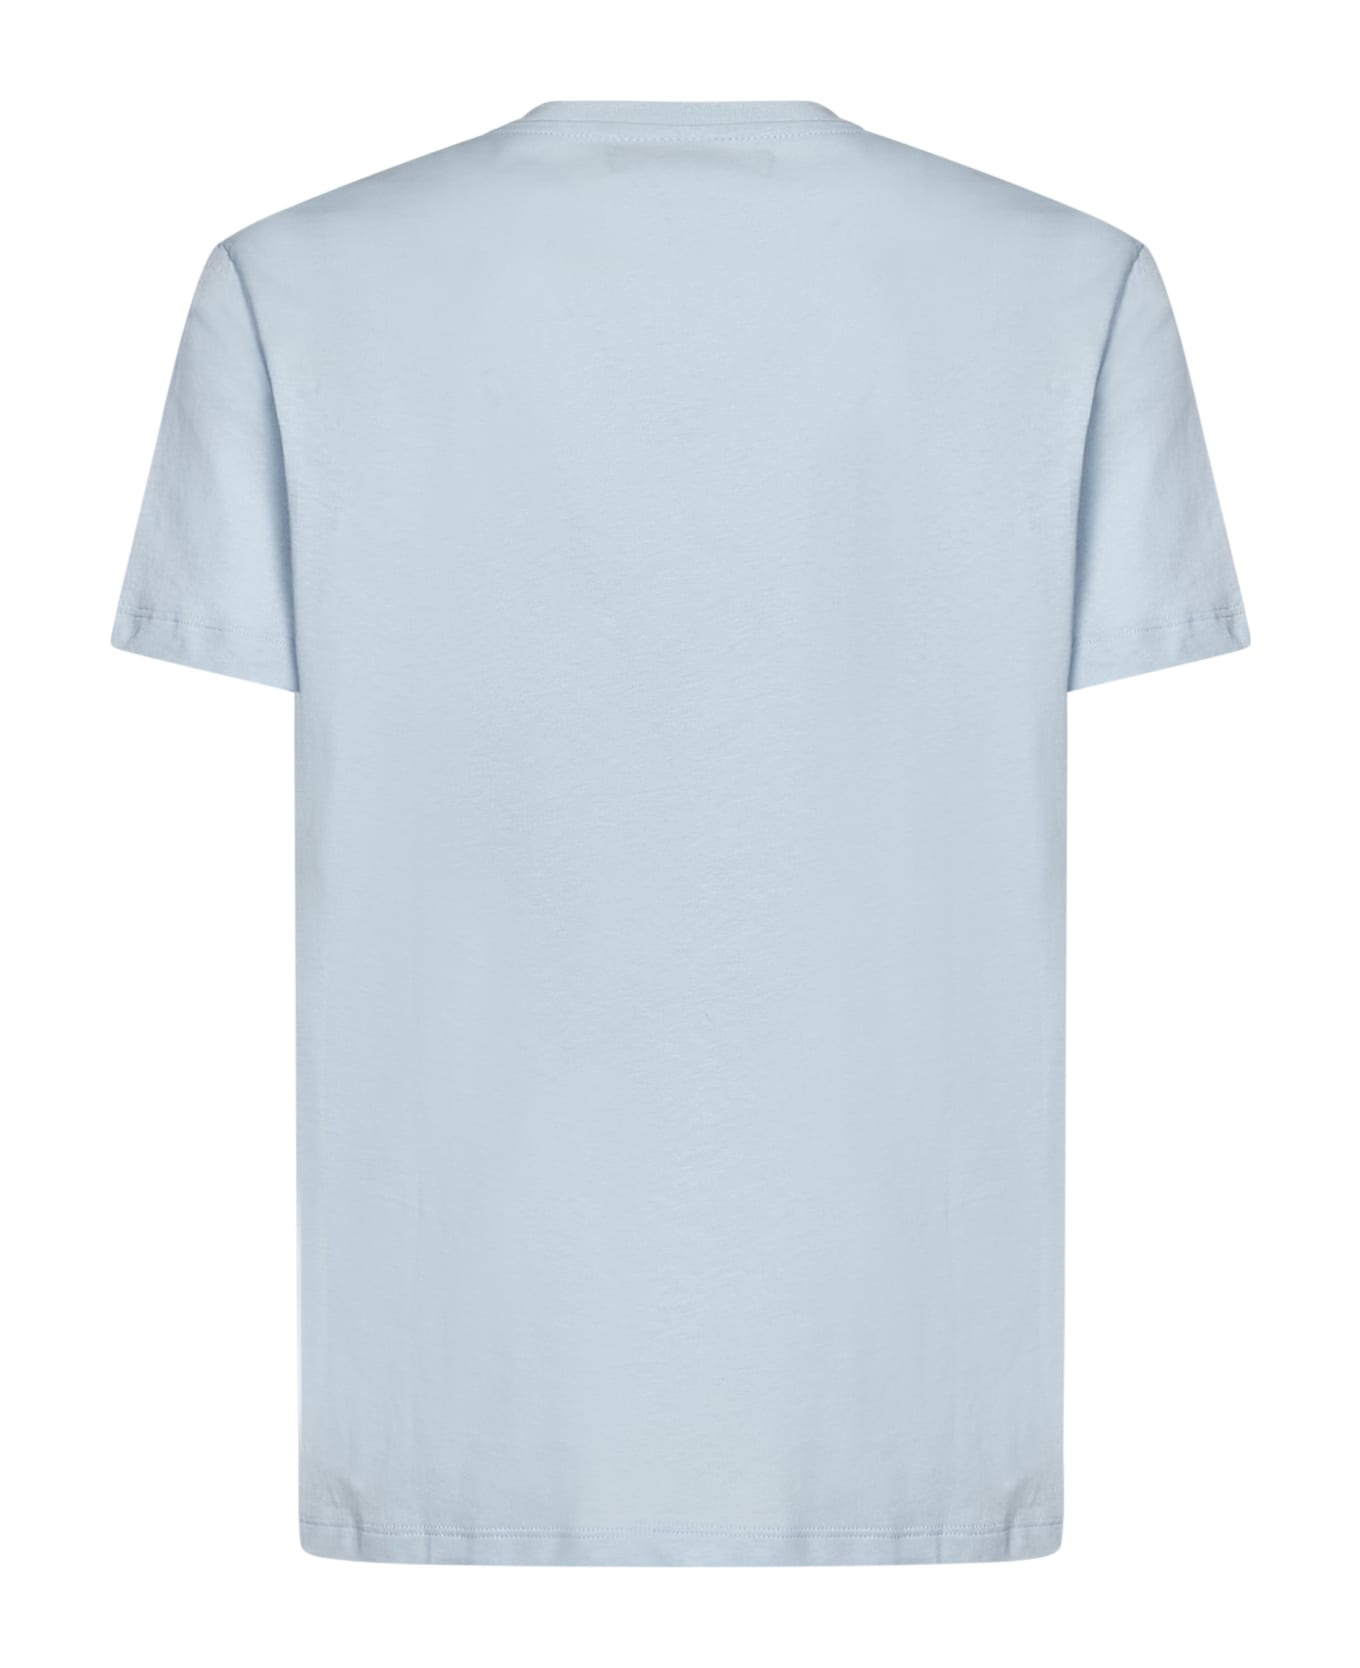 Vilebrequin White Sailing Boat T-shirt - Azzurro Chiaro